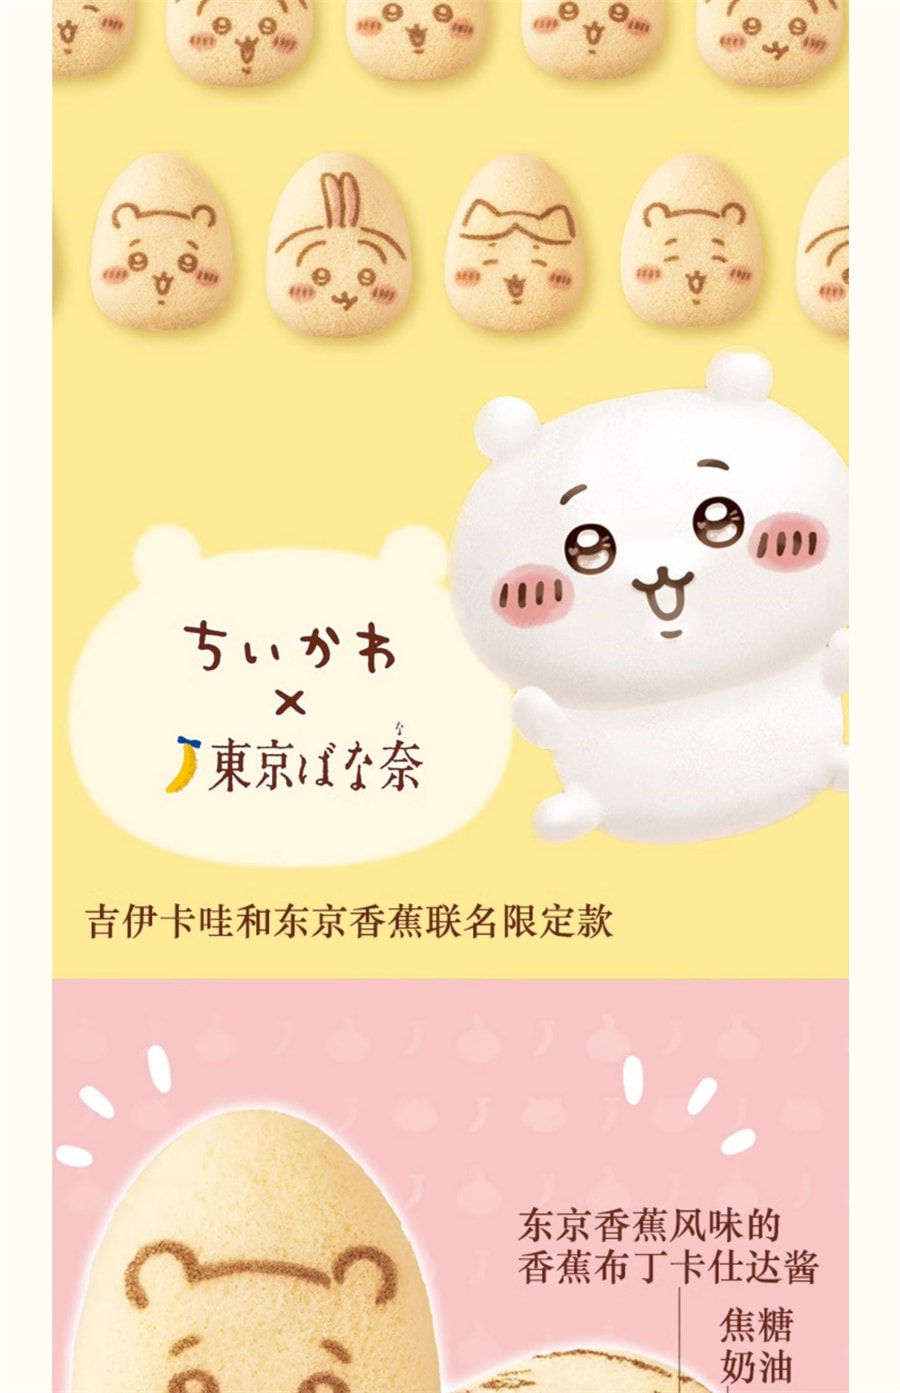 【日本直邮】日本 东京香蕉 TOKYO BANANA 期间限定款 吉伊卡哇 香蕉布丁蛋糕 8枚装